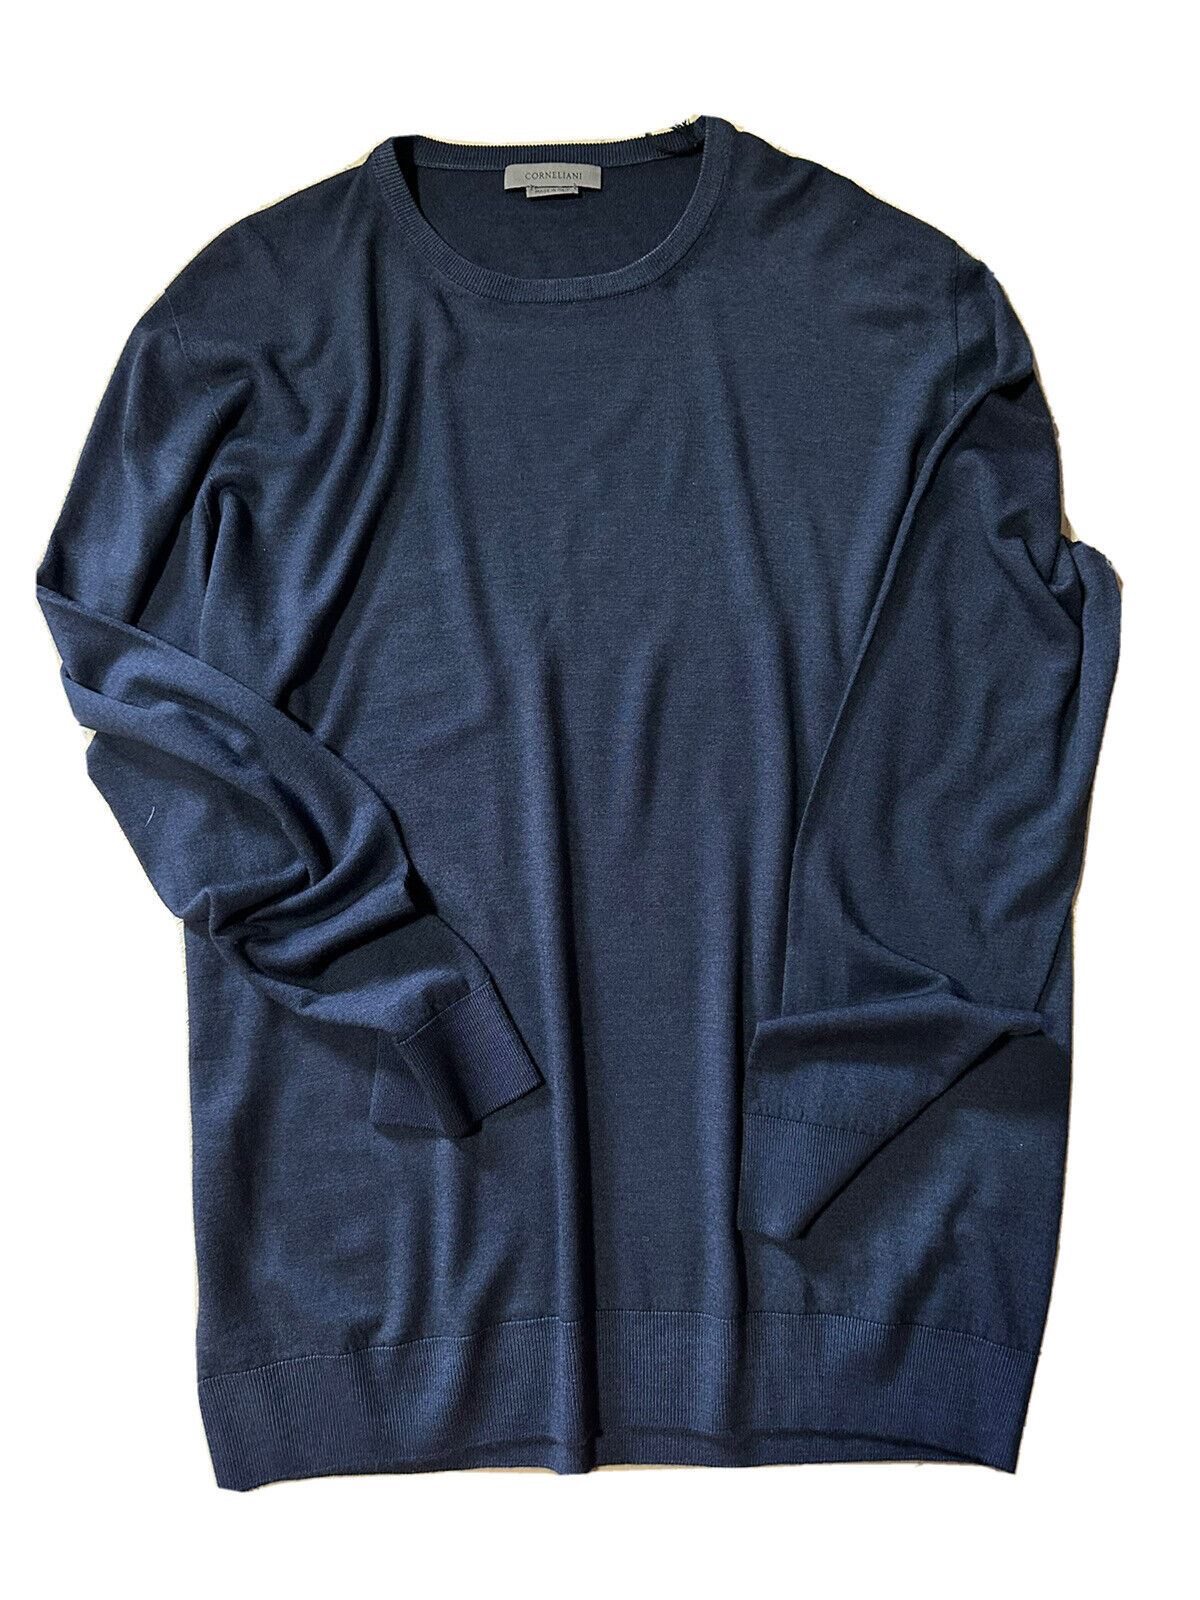 NWT 550 долларов США Corneliani Мужской шерстяной свитер с круглым вырезом Темно-синий 46 США (56 ЕС) Италия